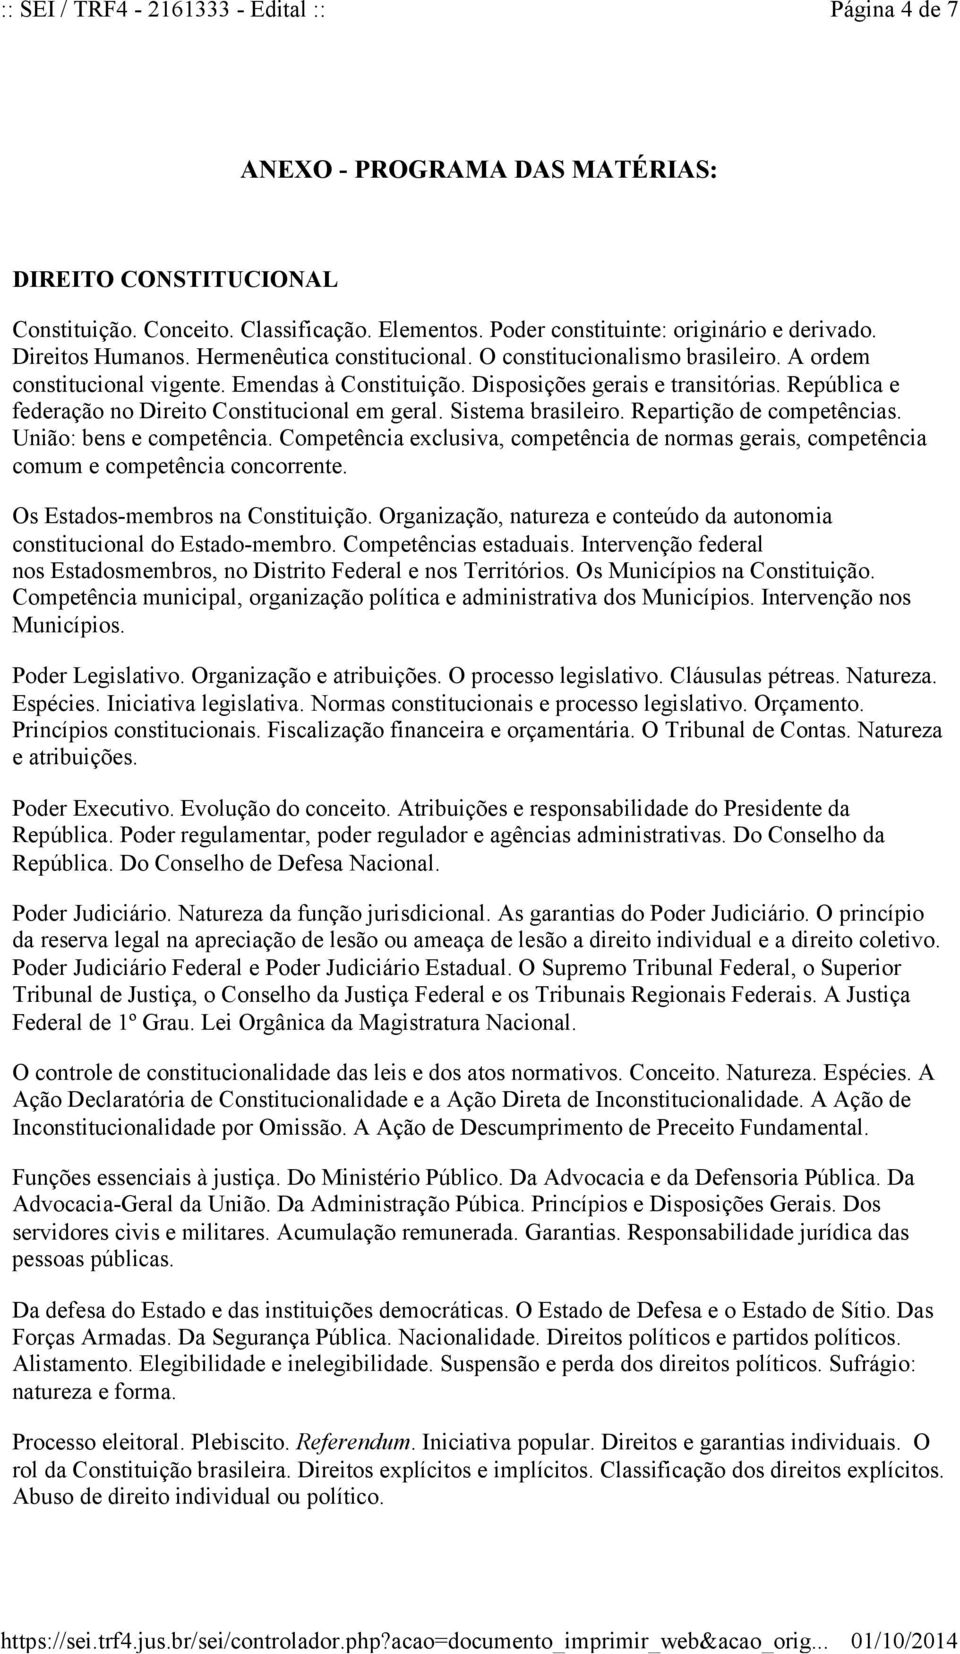 República e federação no Direito Constitucional em geral. Sistema brasileiro. Repartição de competências. União: bens e competência.